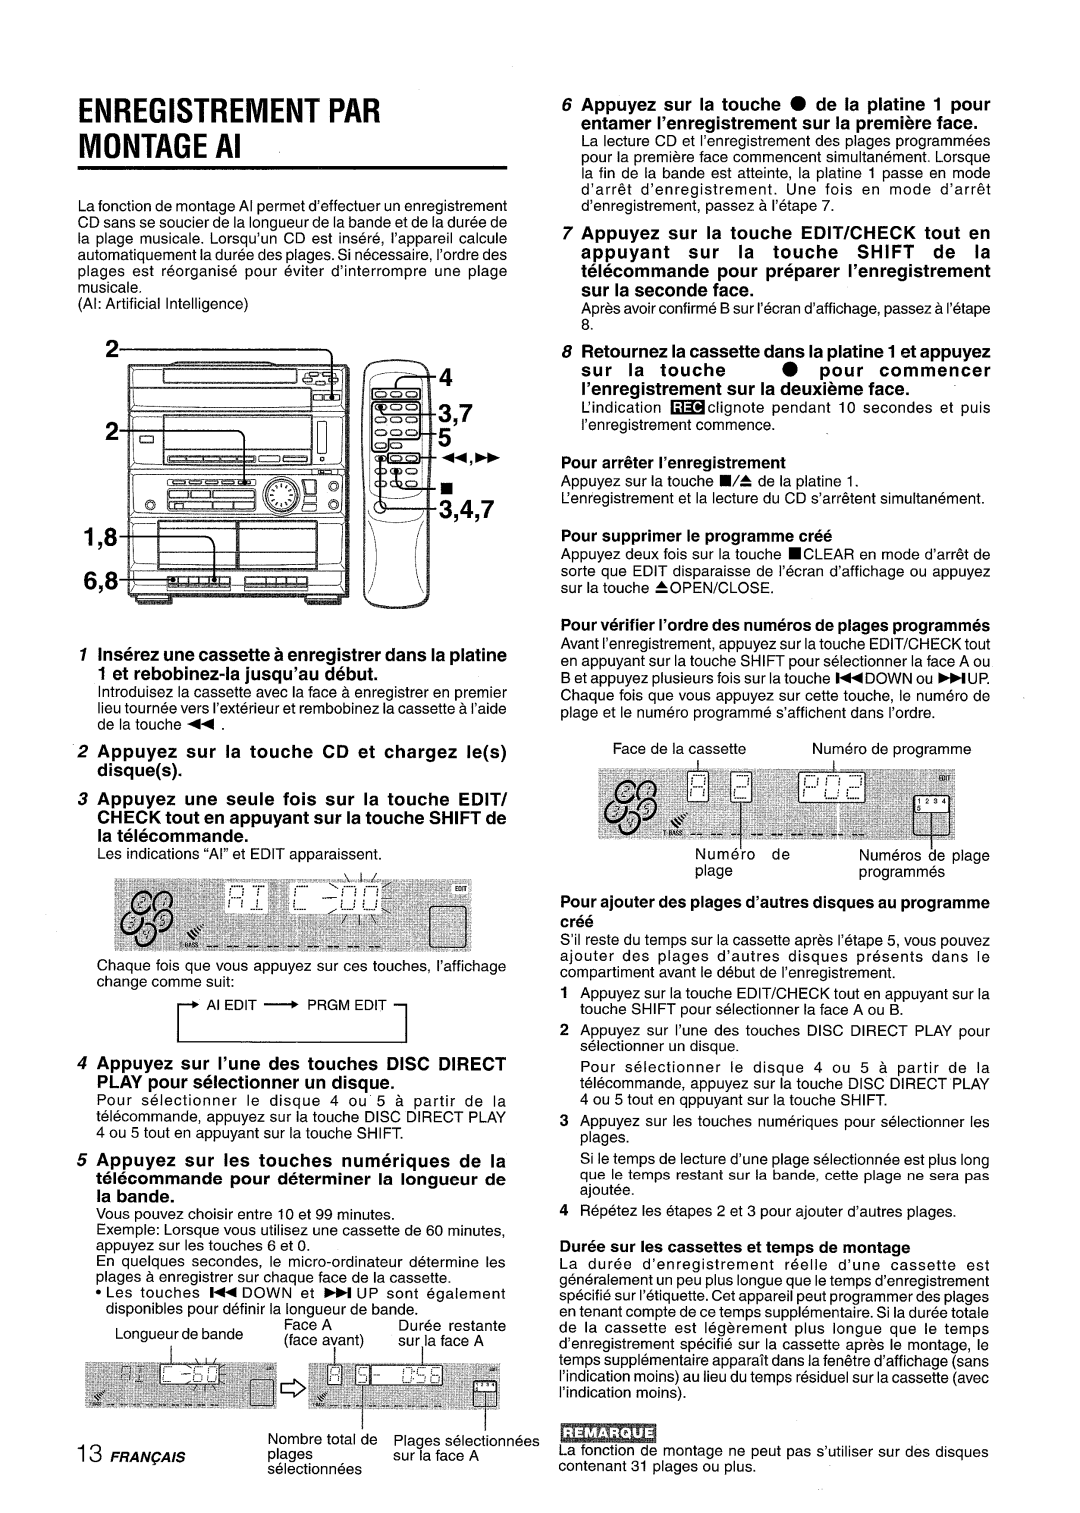 Sony CX-ZR525 manual ENREGISTREMENT PAR MONTAGE Al, Inserez une cassette a enreaistrer clans la ~latine, sur la, touche 